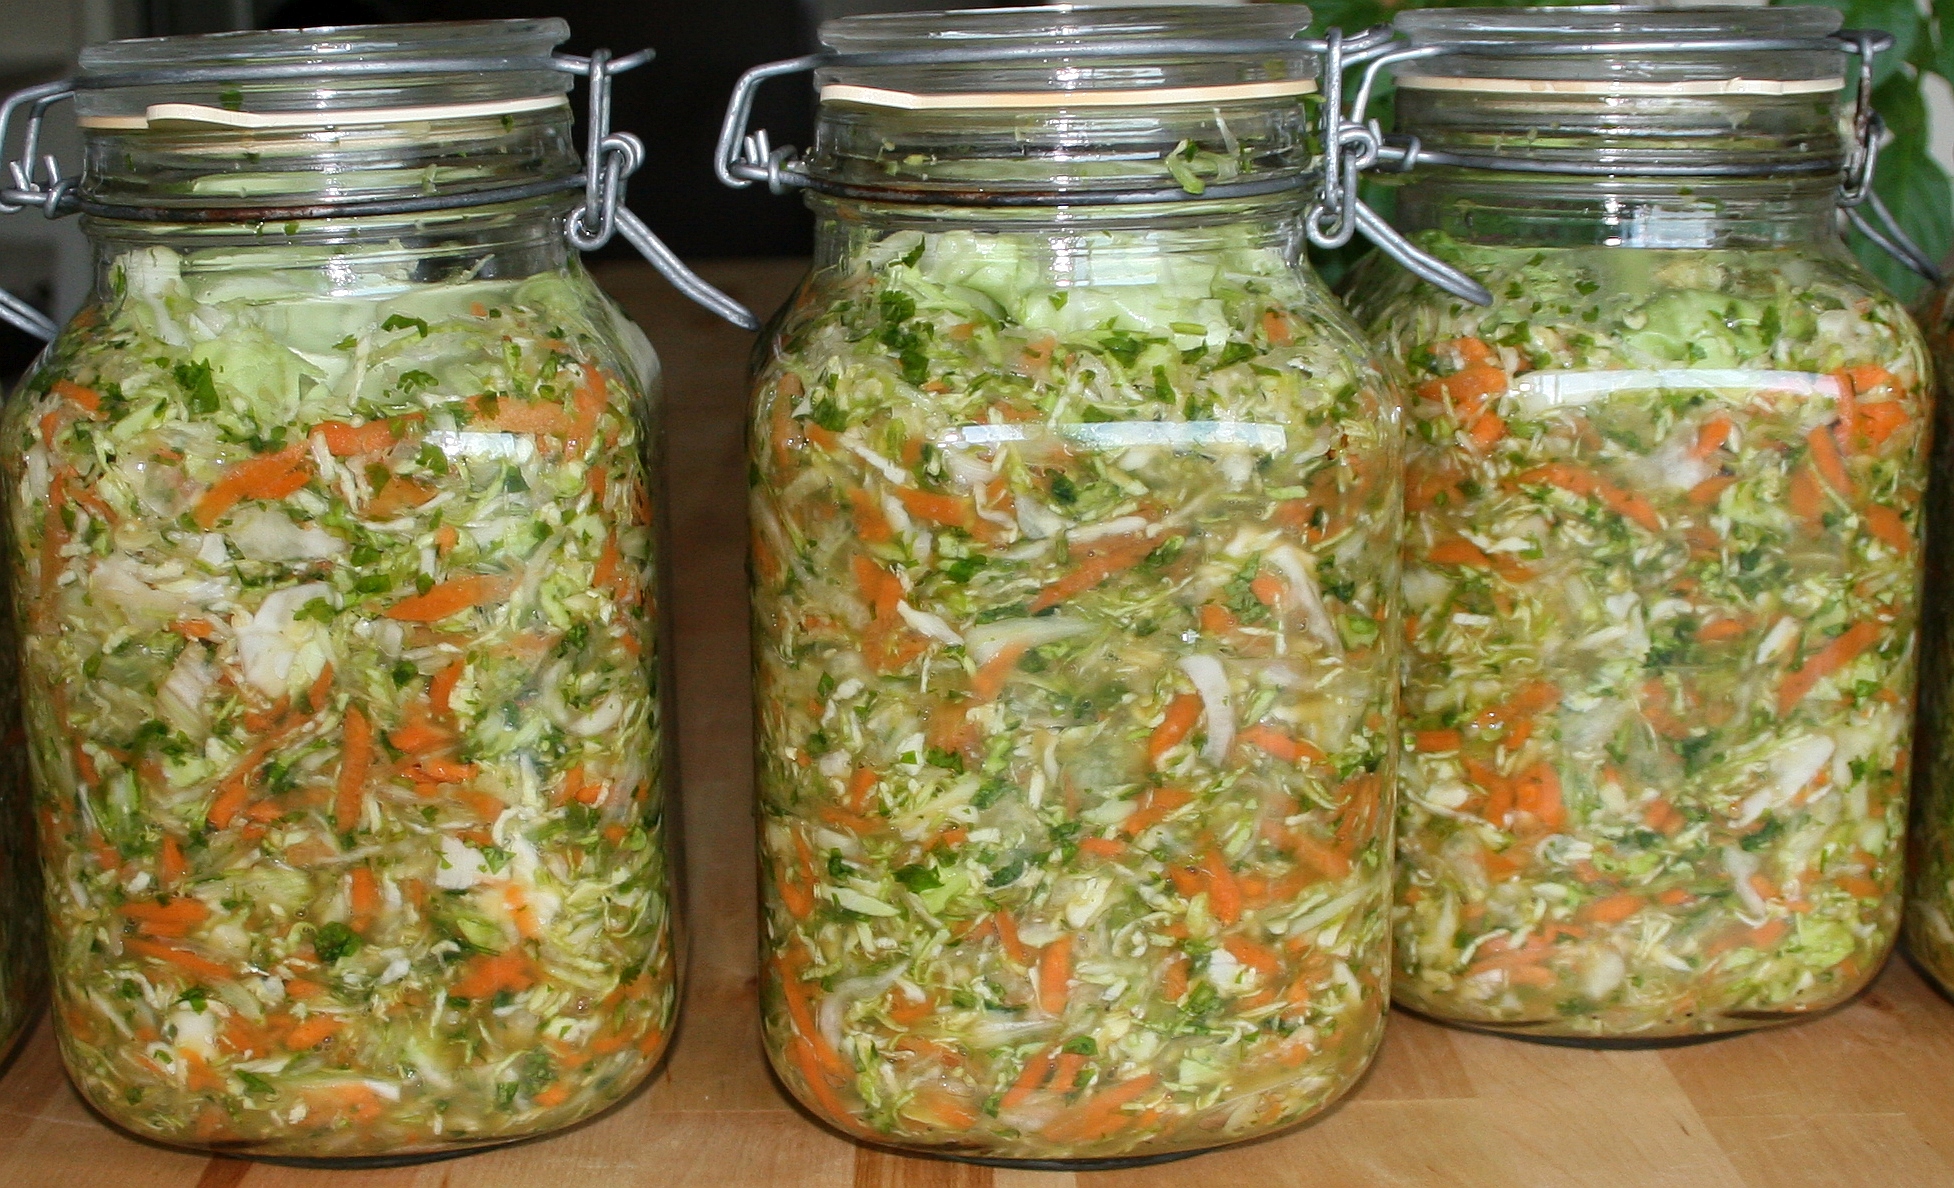 Sauerkraut at home